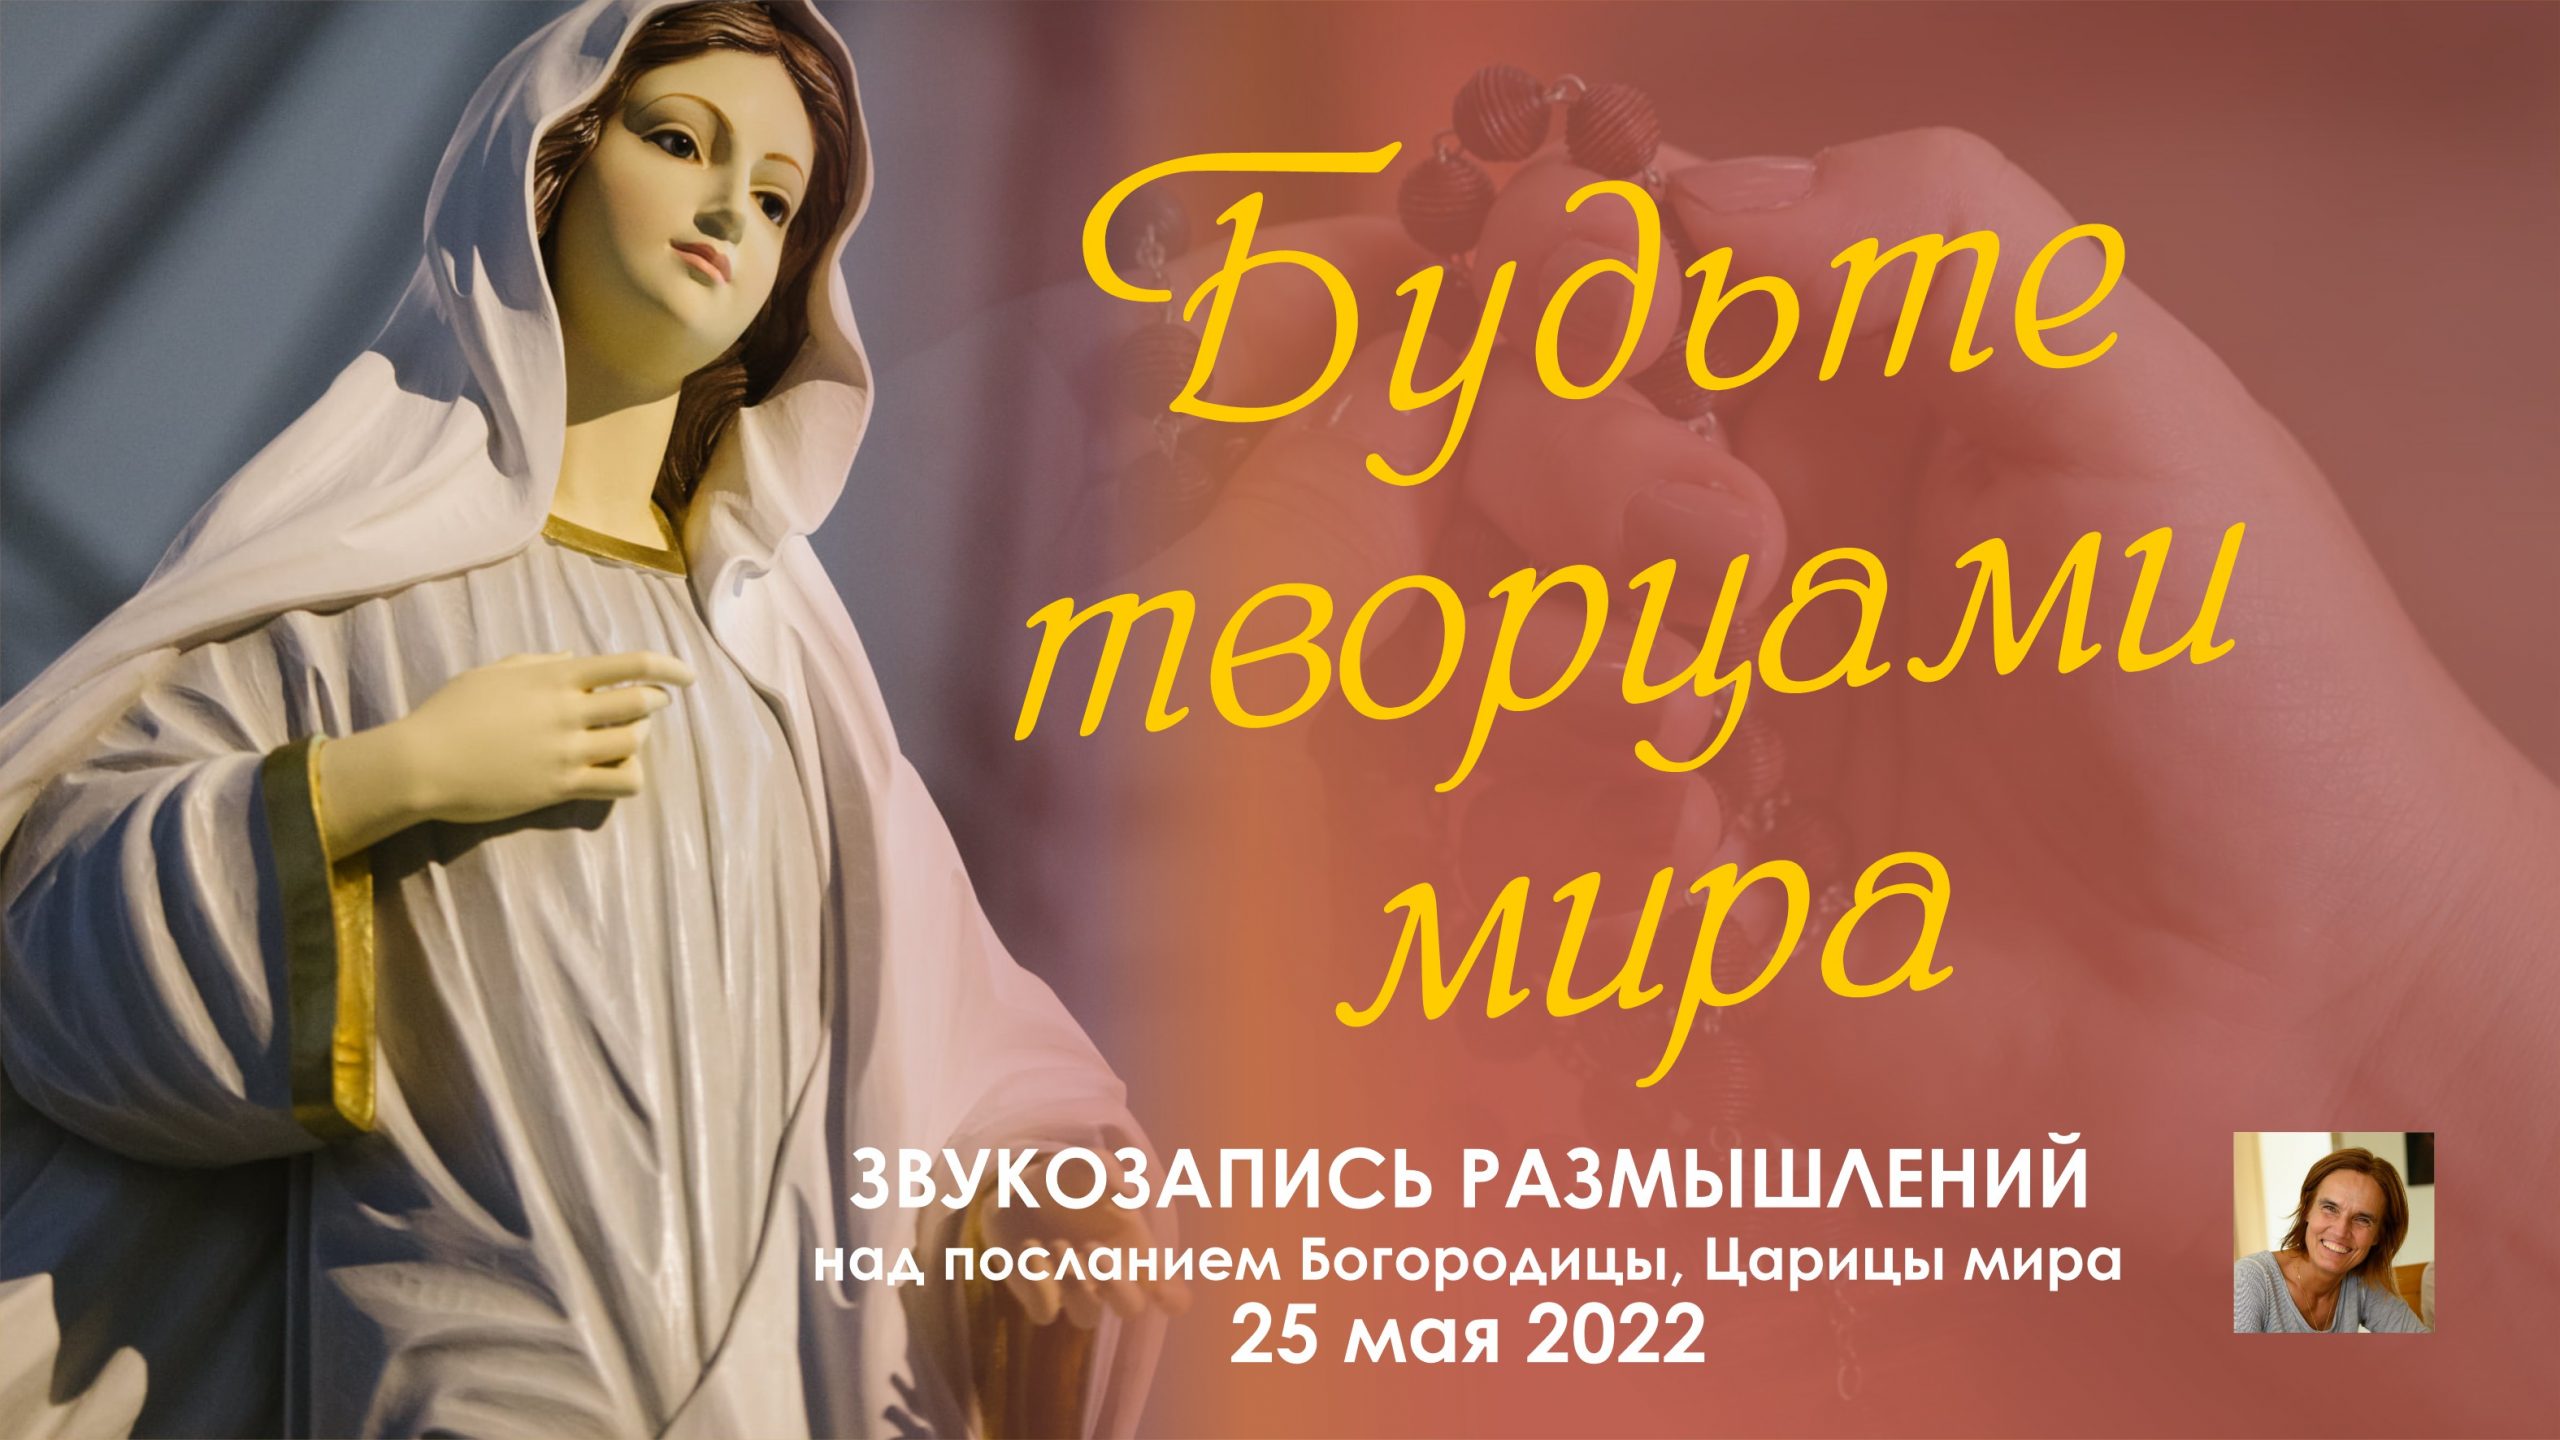 Звукозапись размышлений над посланием от 25.05.2022 (Терезия Гажиова)